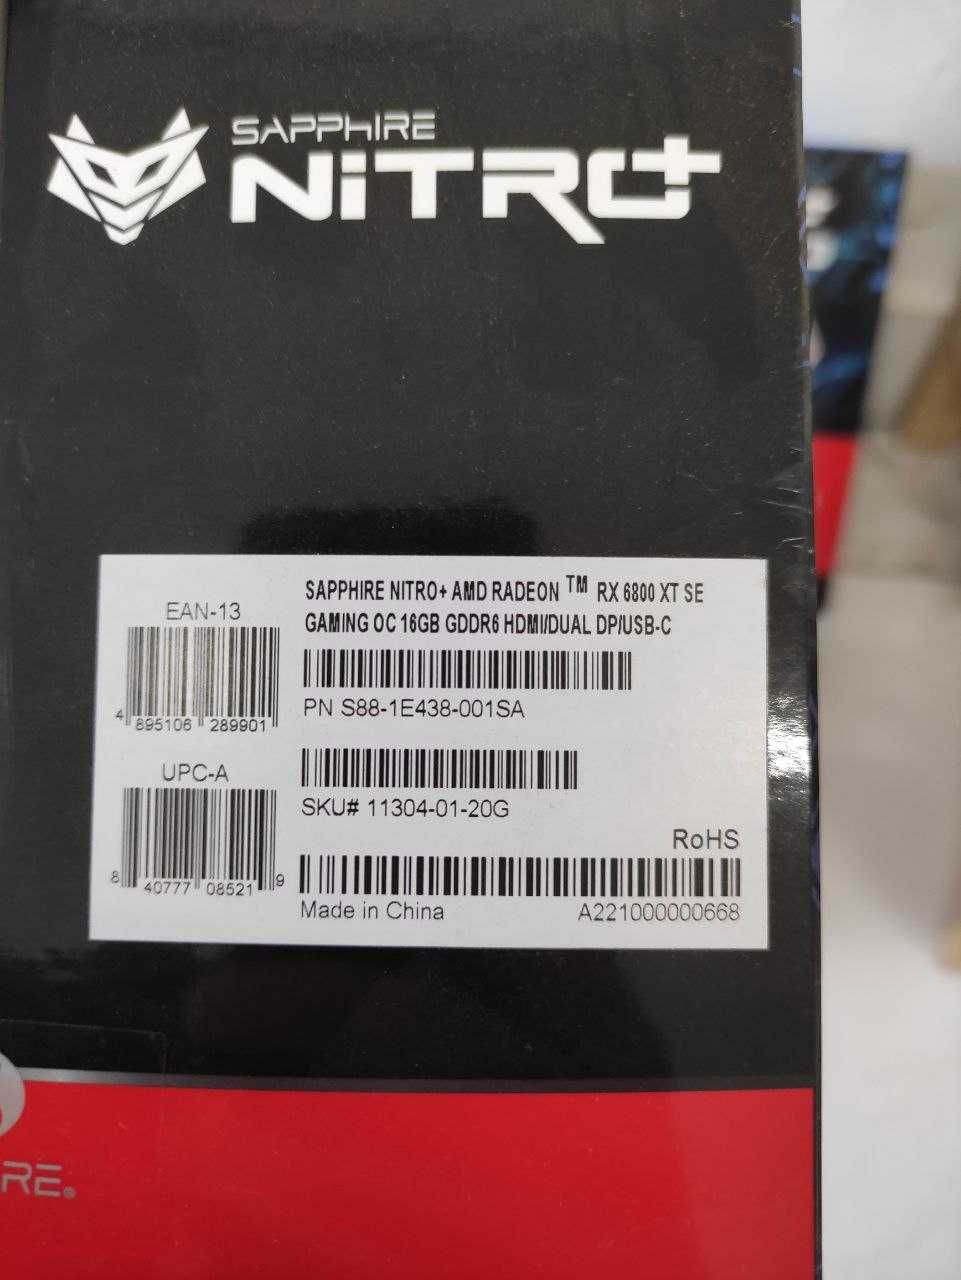 Відеокартки Sapphire AMD Radeon RX6800XT NITRO+